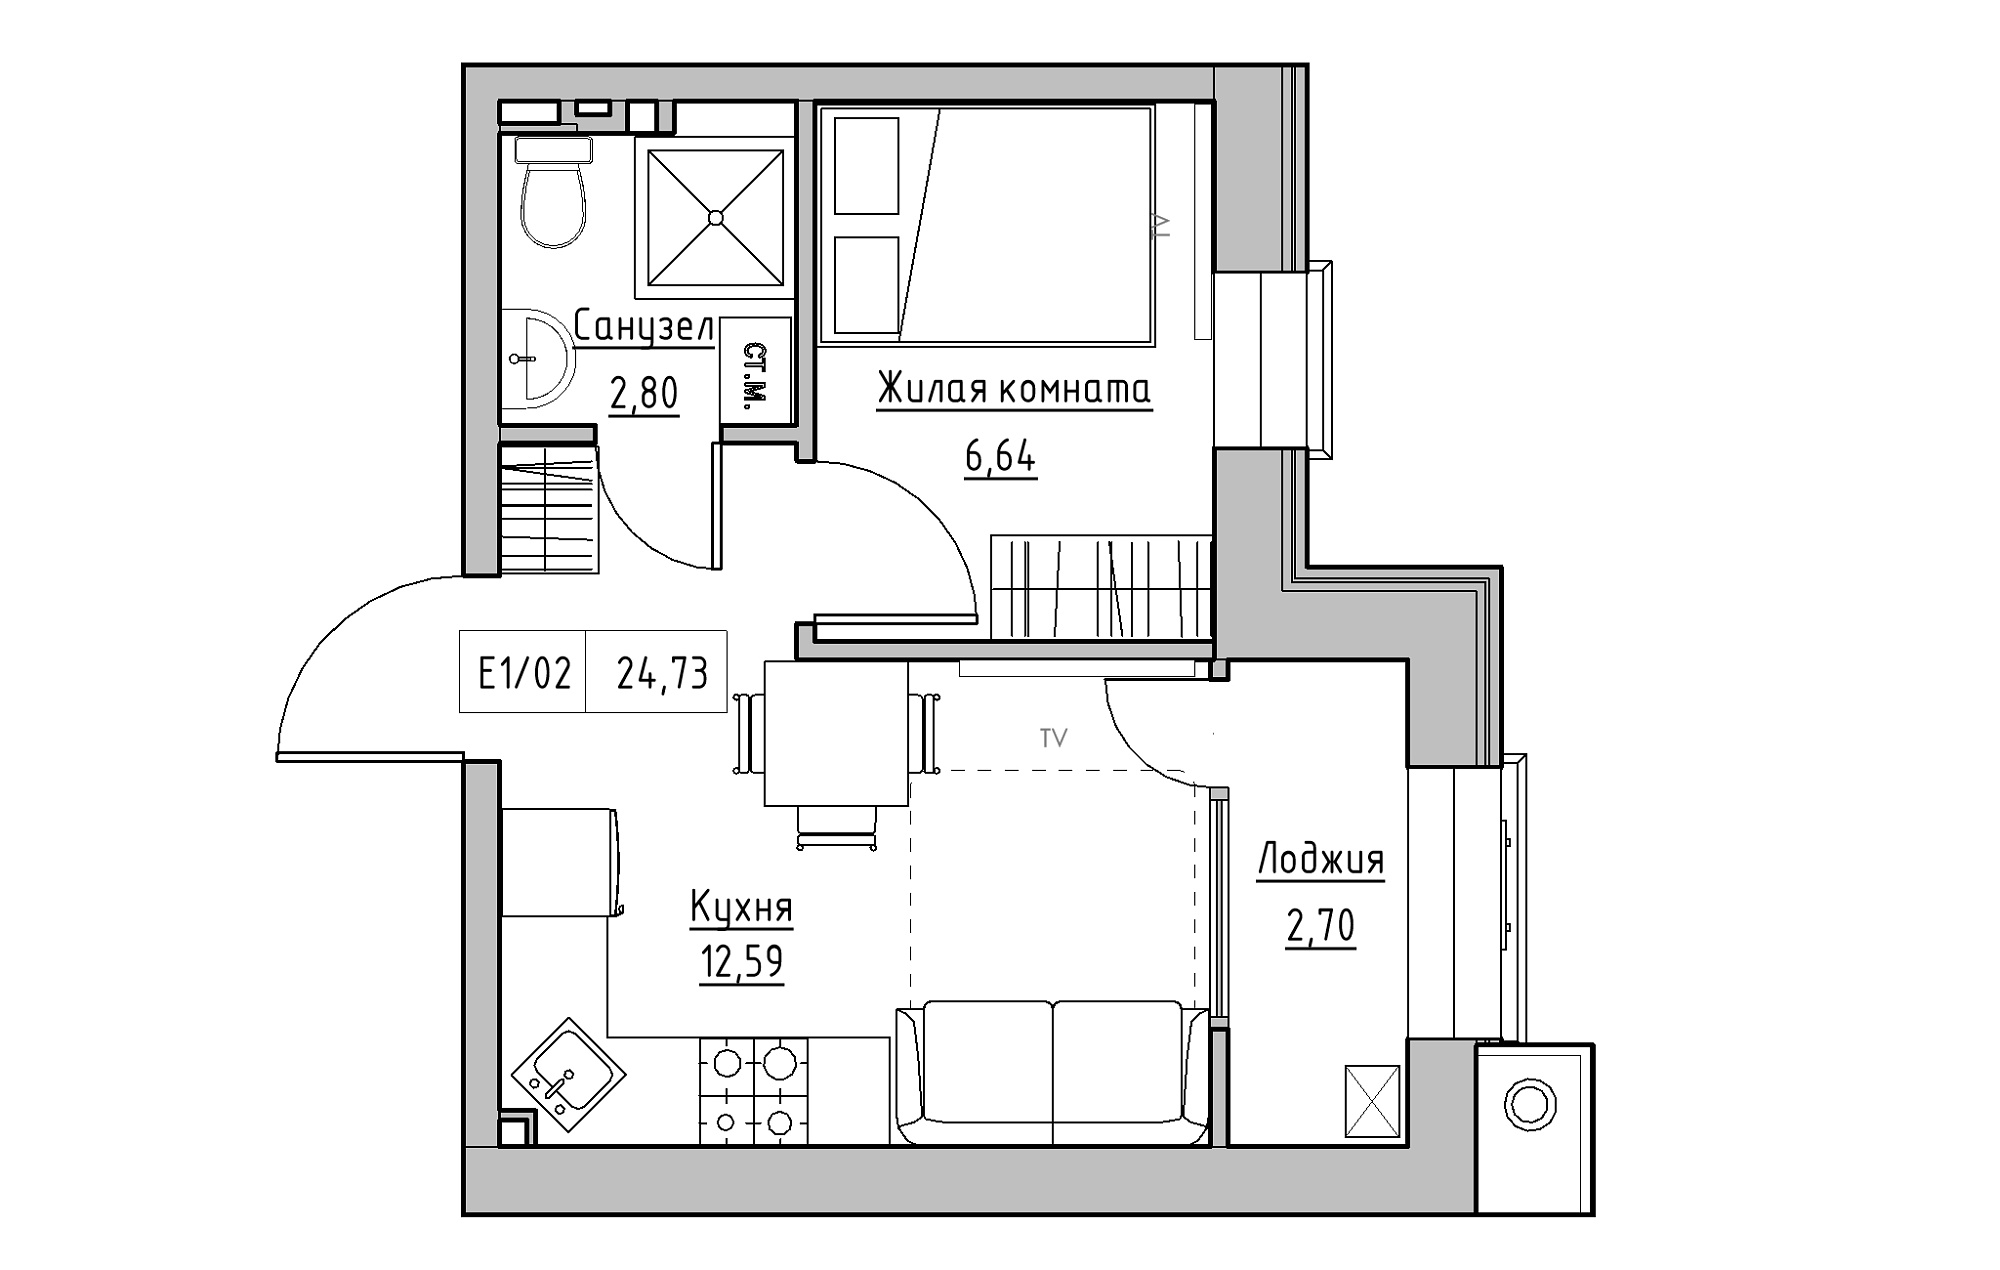 Планування 1-к квартира площею 24.73м2, KS-013-01/0001.